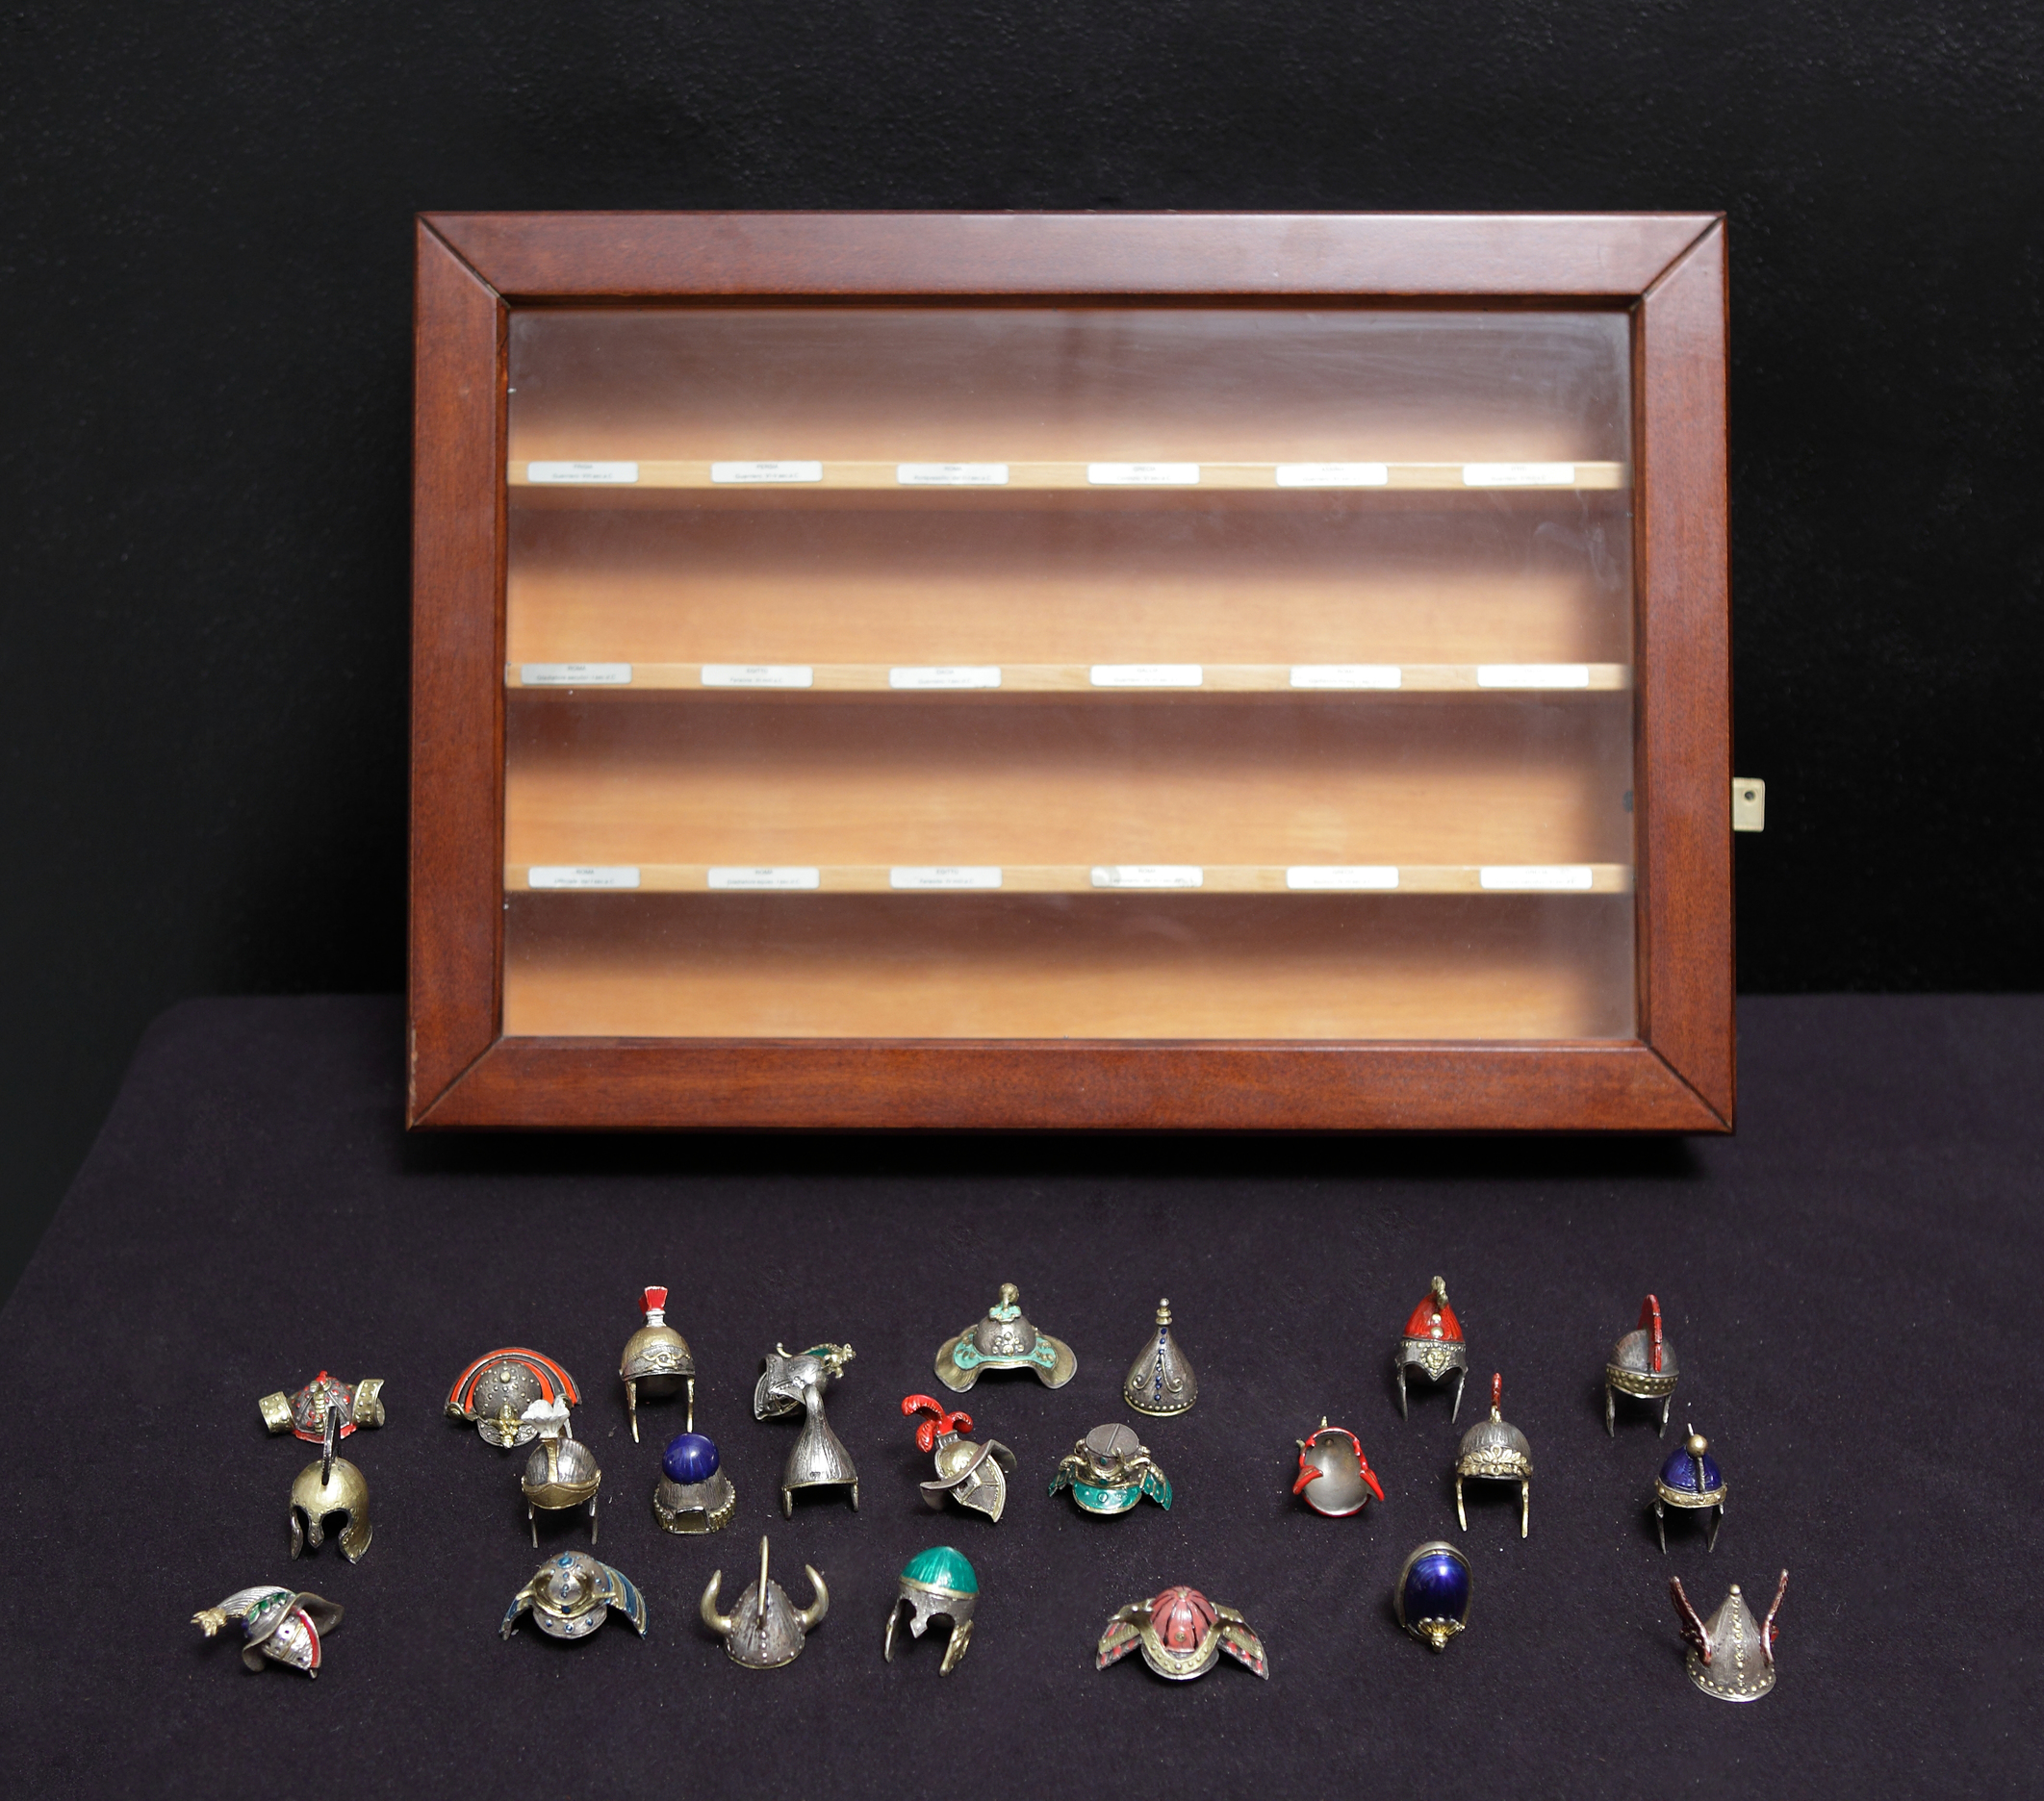 TECA CONTENENTE collezione di elmi in miniatura